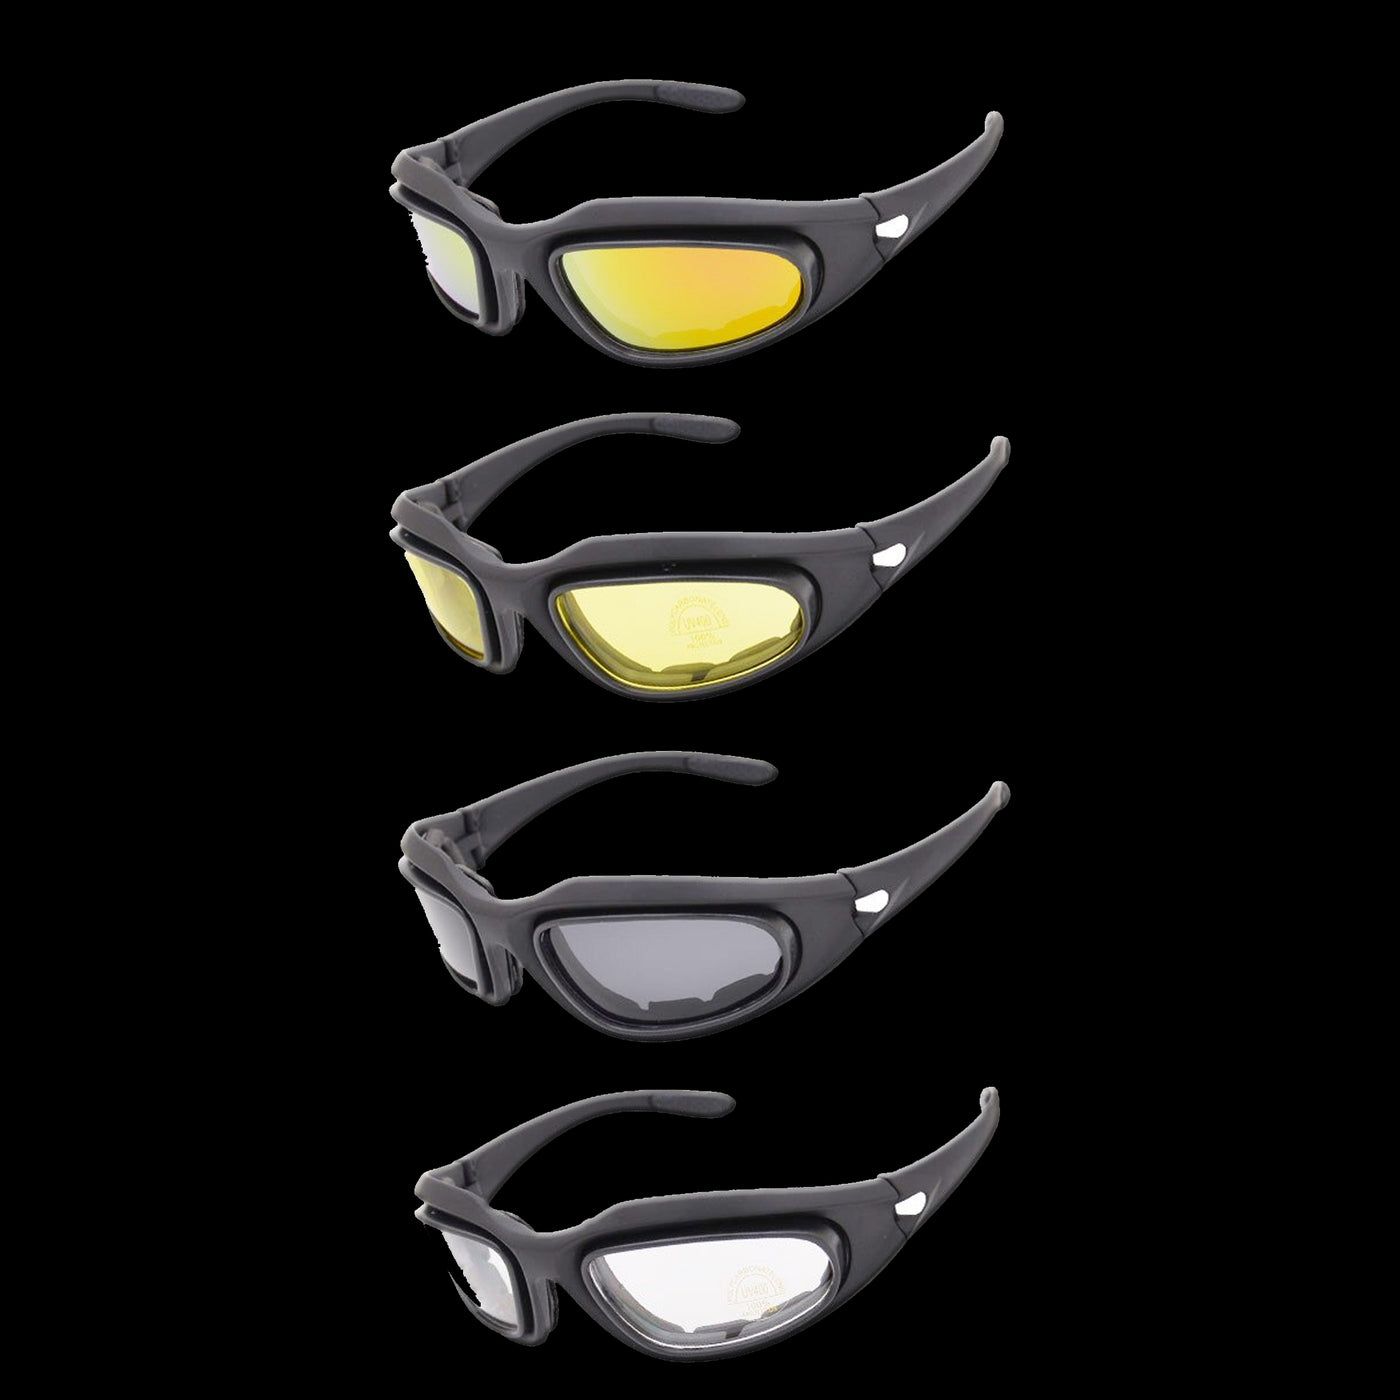 Multi-Lense Riding Glasses